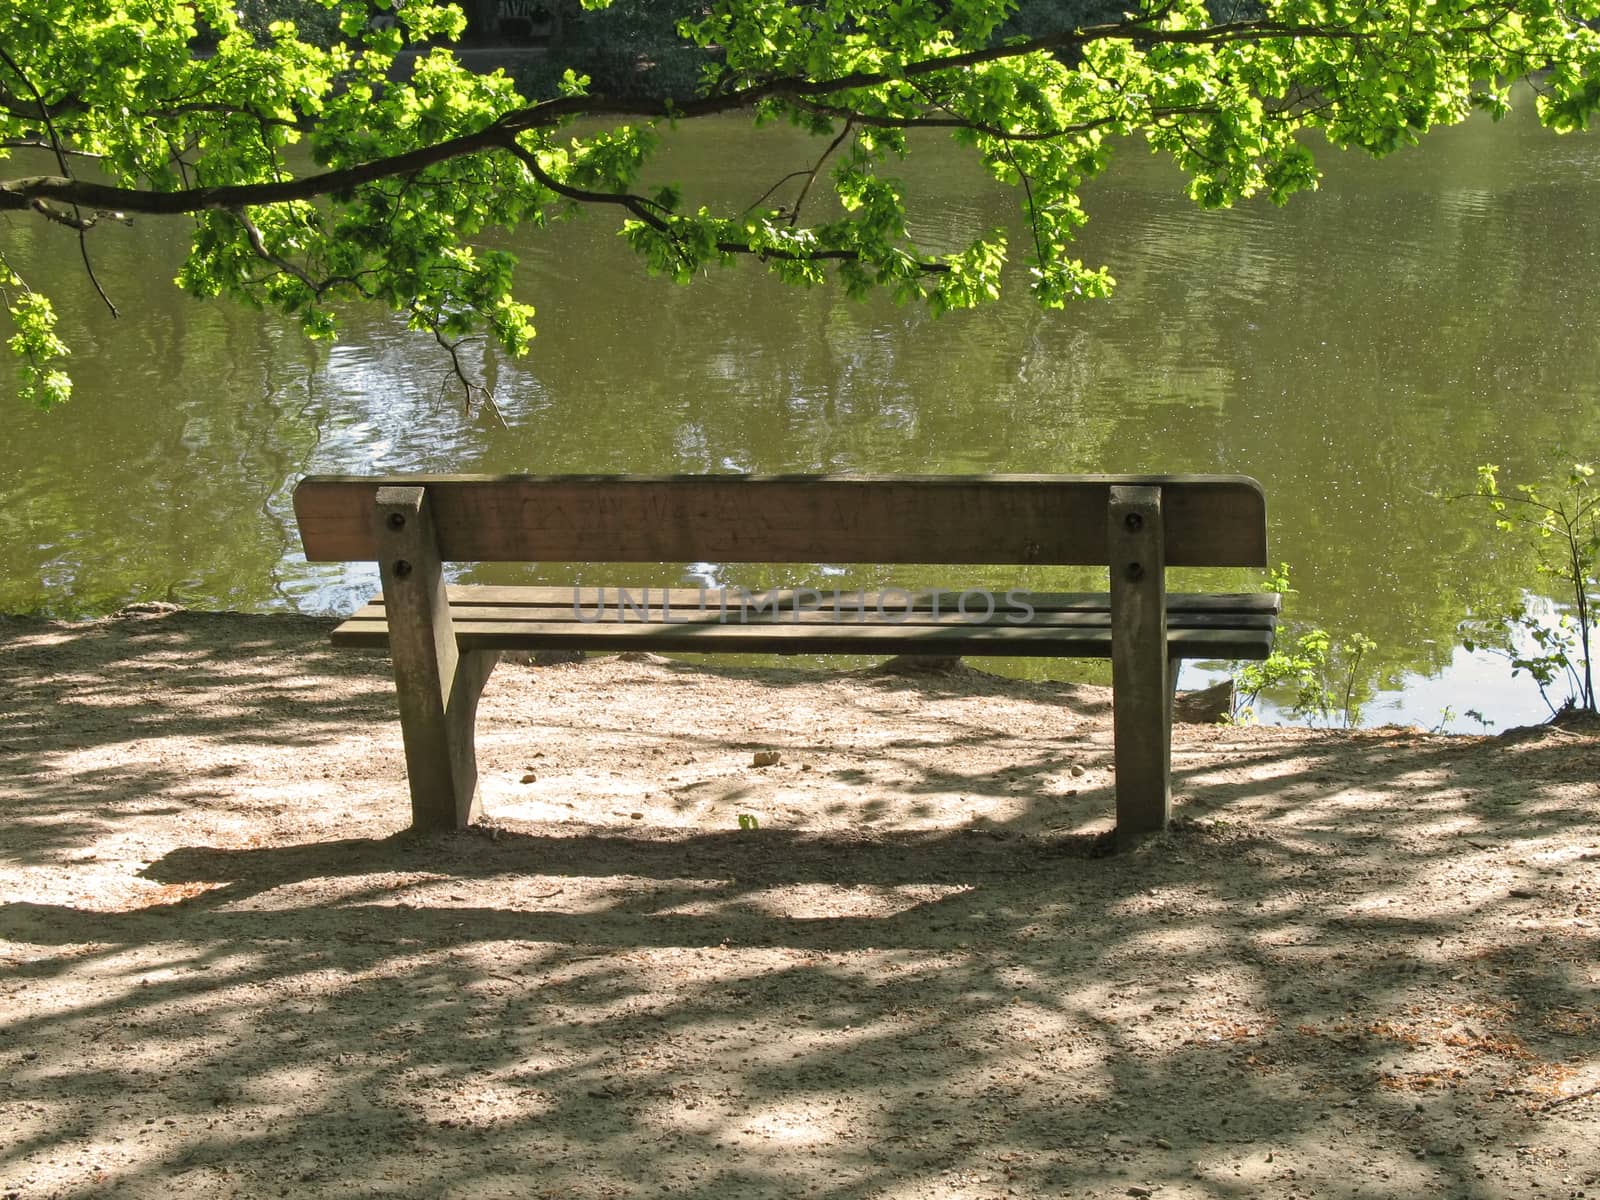 Park bench at Bramfelder See, Hamburg, Germany.